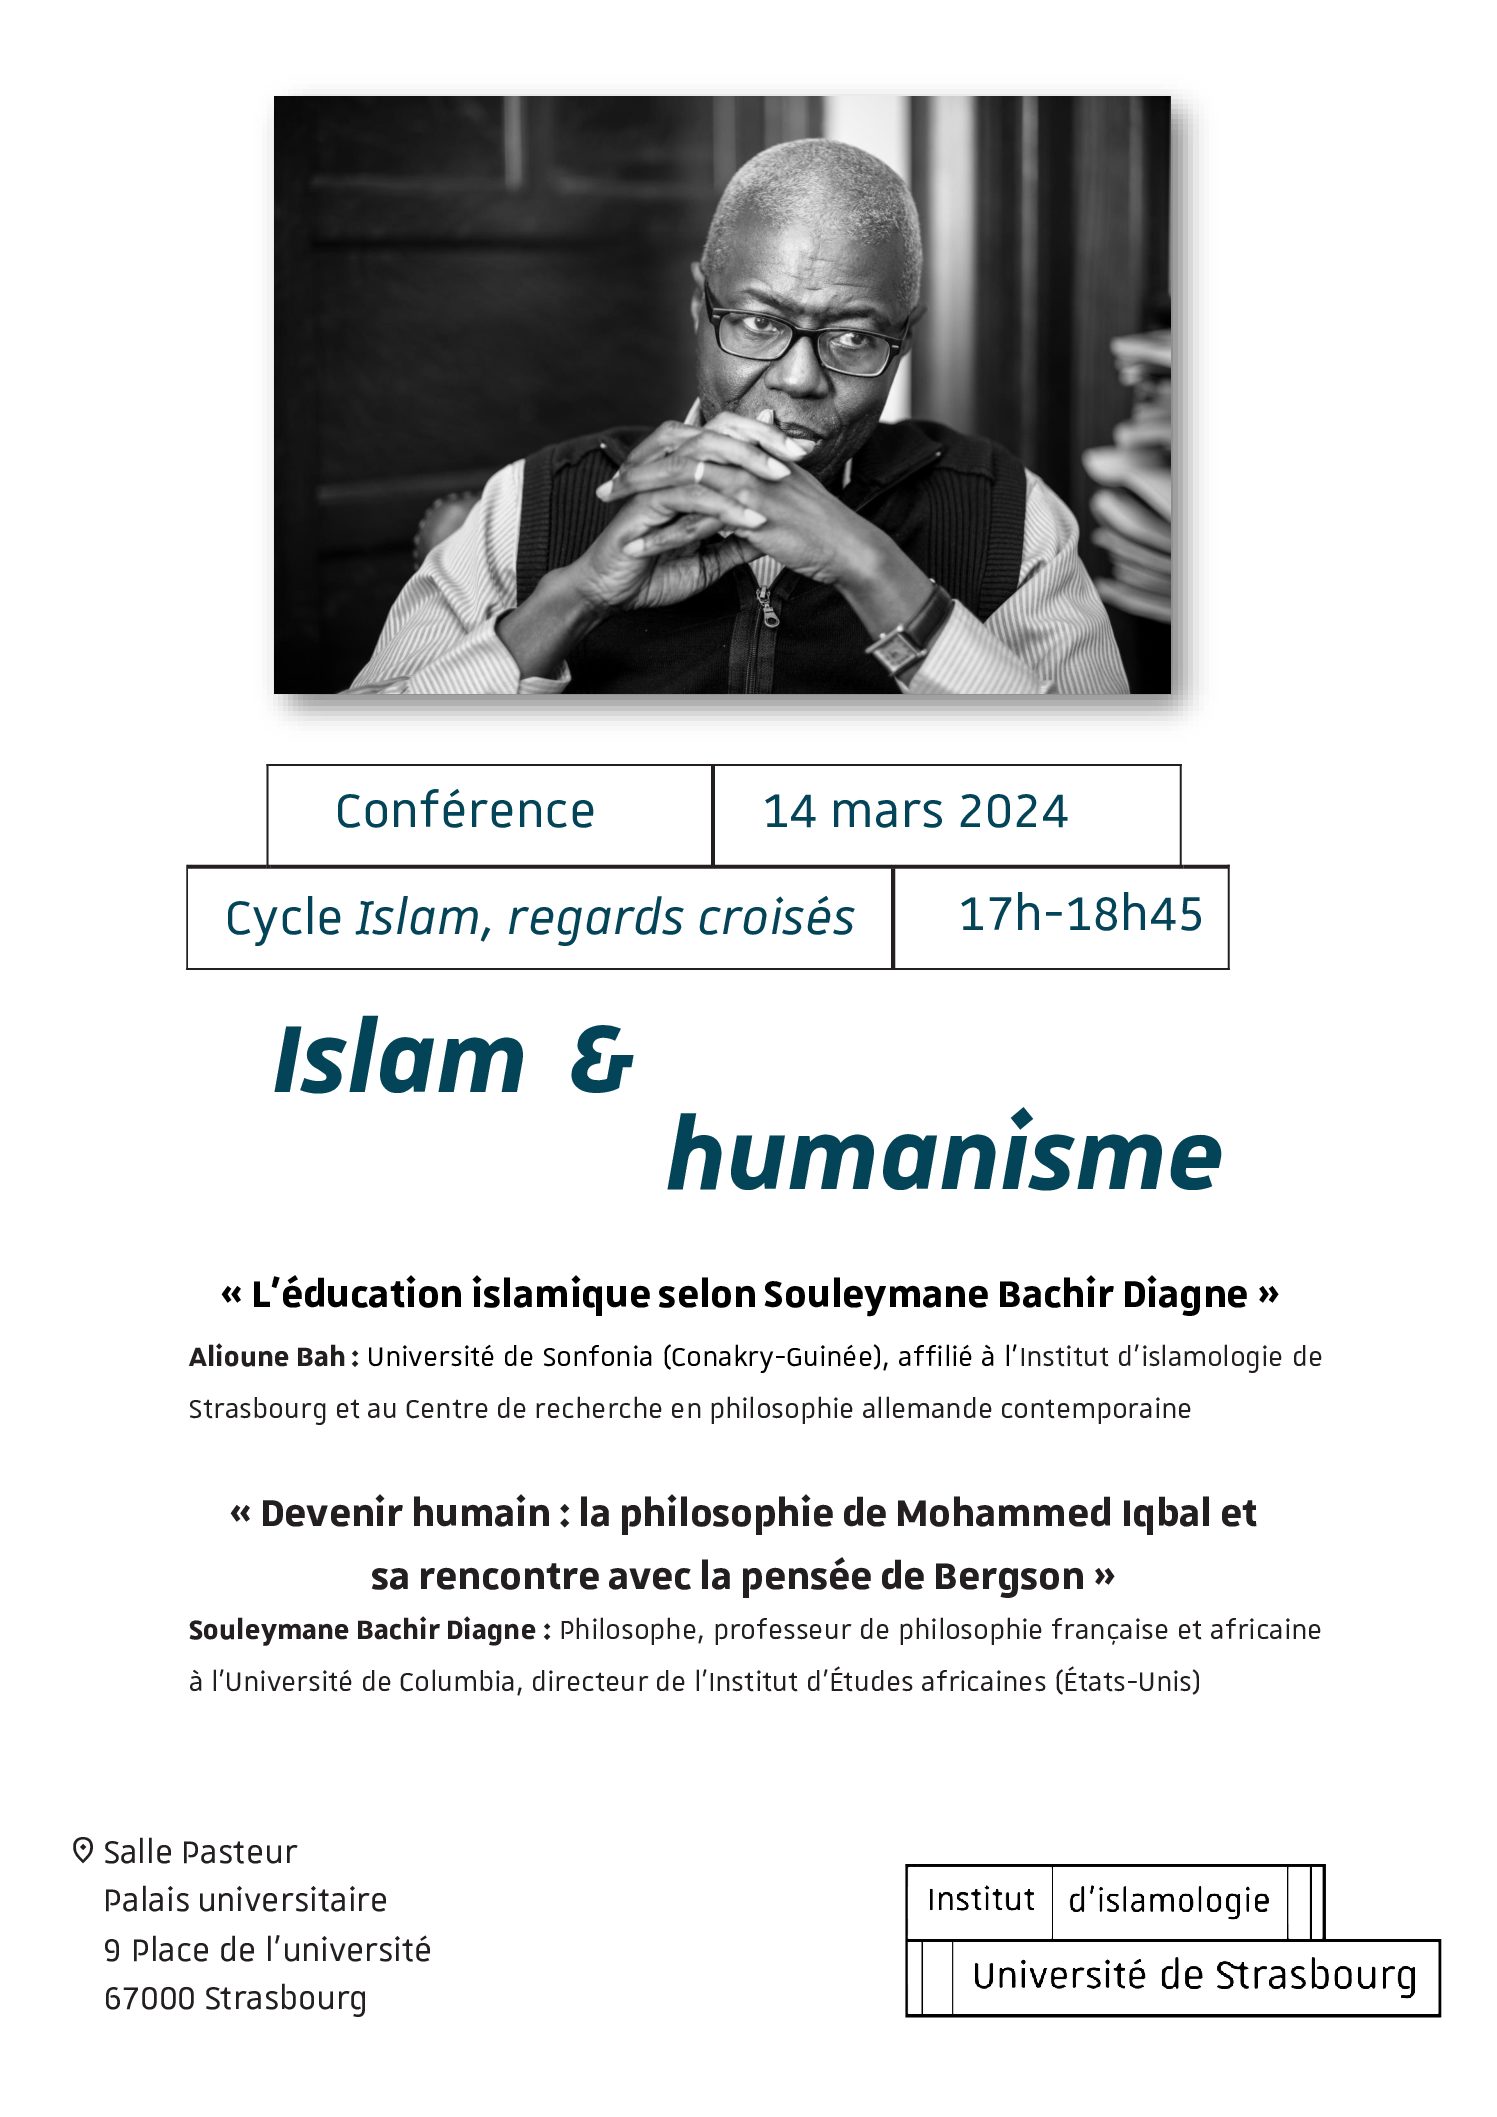 Alioune Bah et Souleymane Bachir Diagne à l’Institut d’islamologie de l’Université de Strasbourg